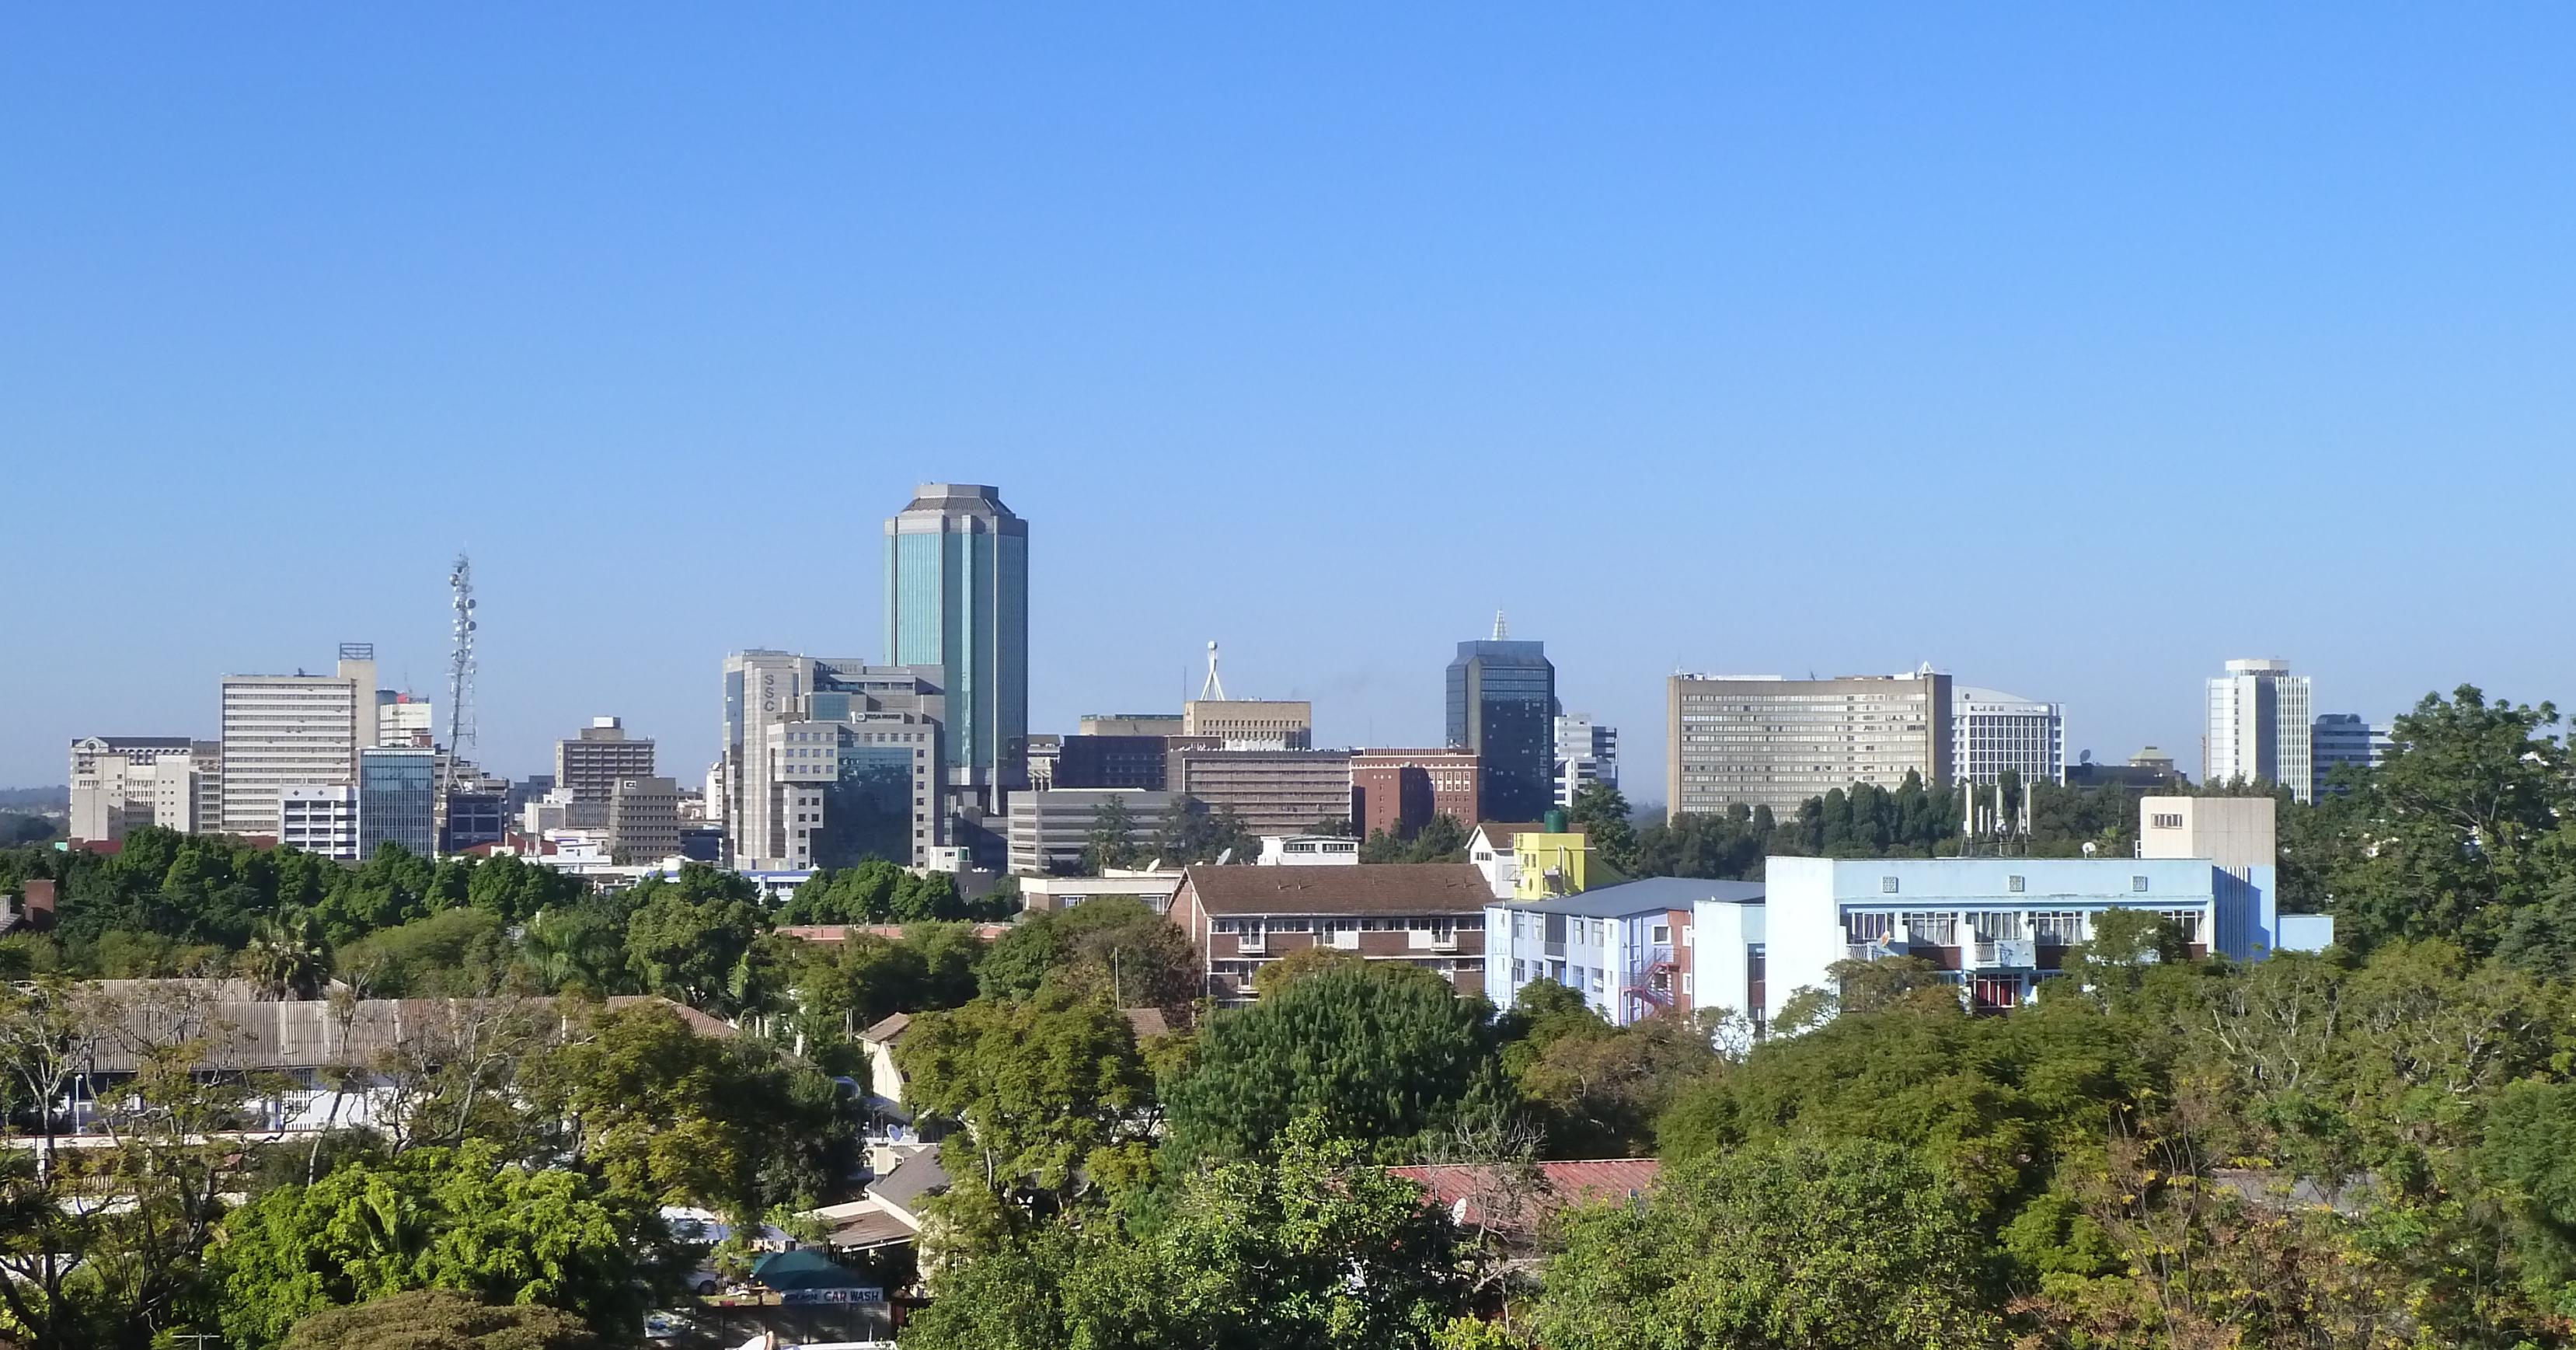 Blick auf die Innenstadt von Harare, geprägt von Hochhäusern